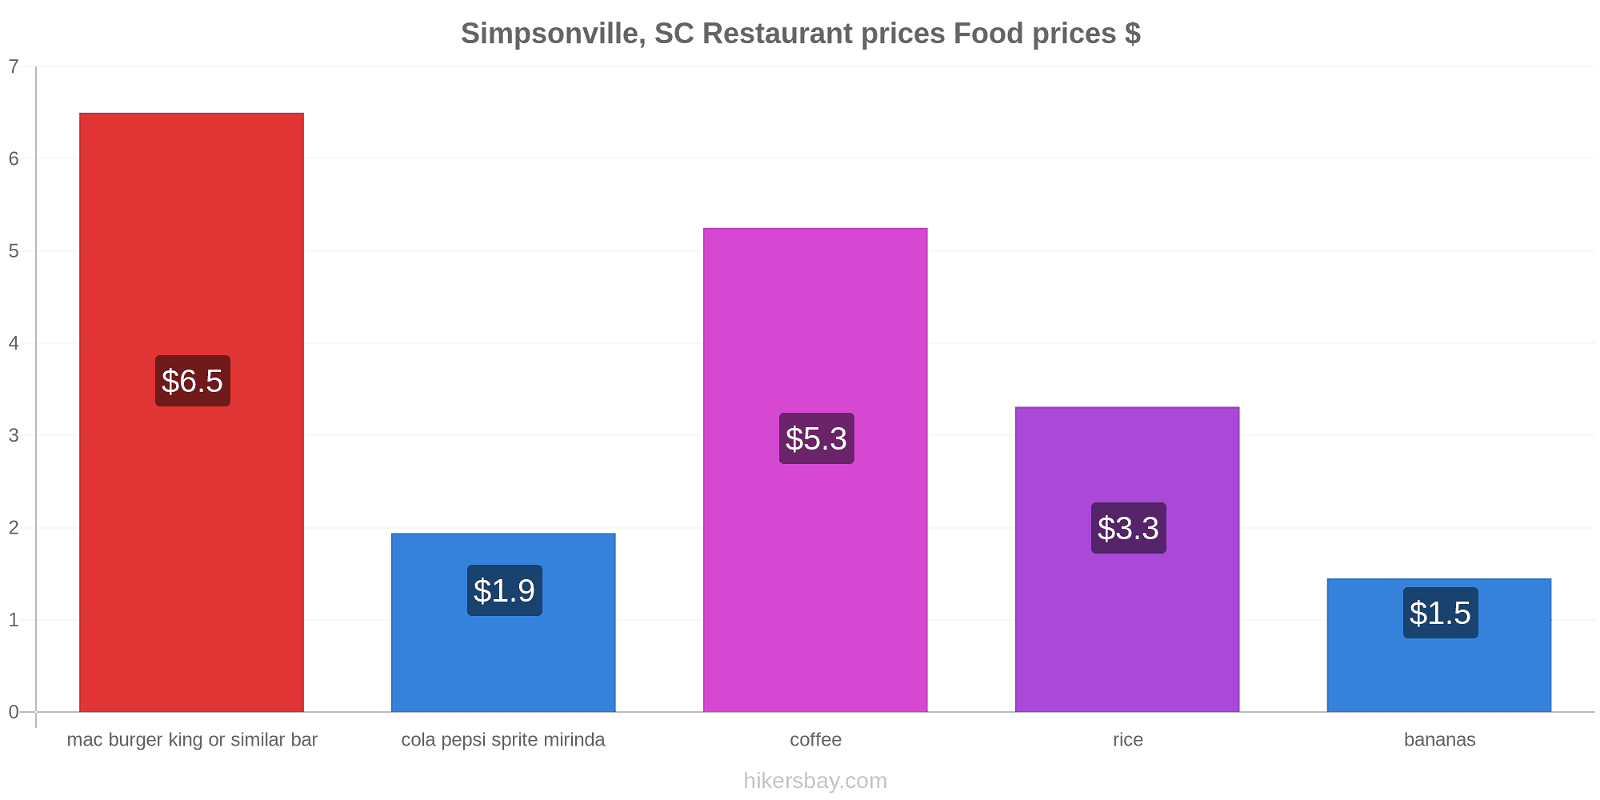 Simpsonville, SC price changes hikersbay.com